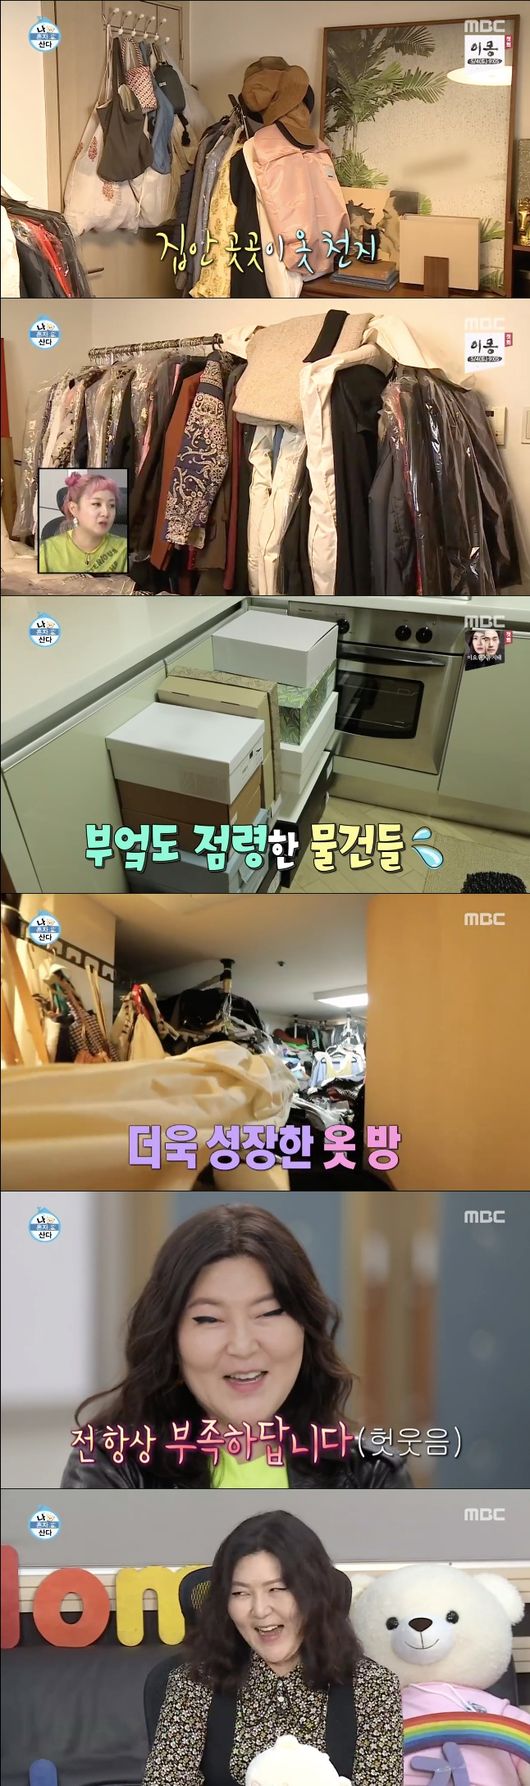 [사진] MBC '나 혼자 산다' 한혜연 옷방 '천벌동굴'